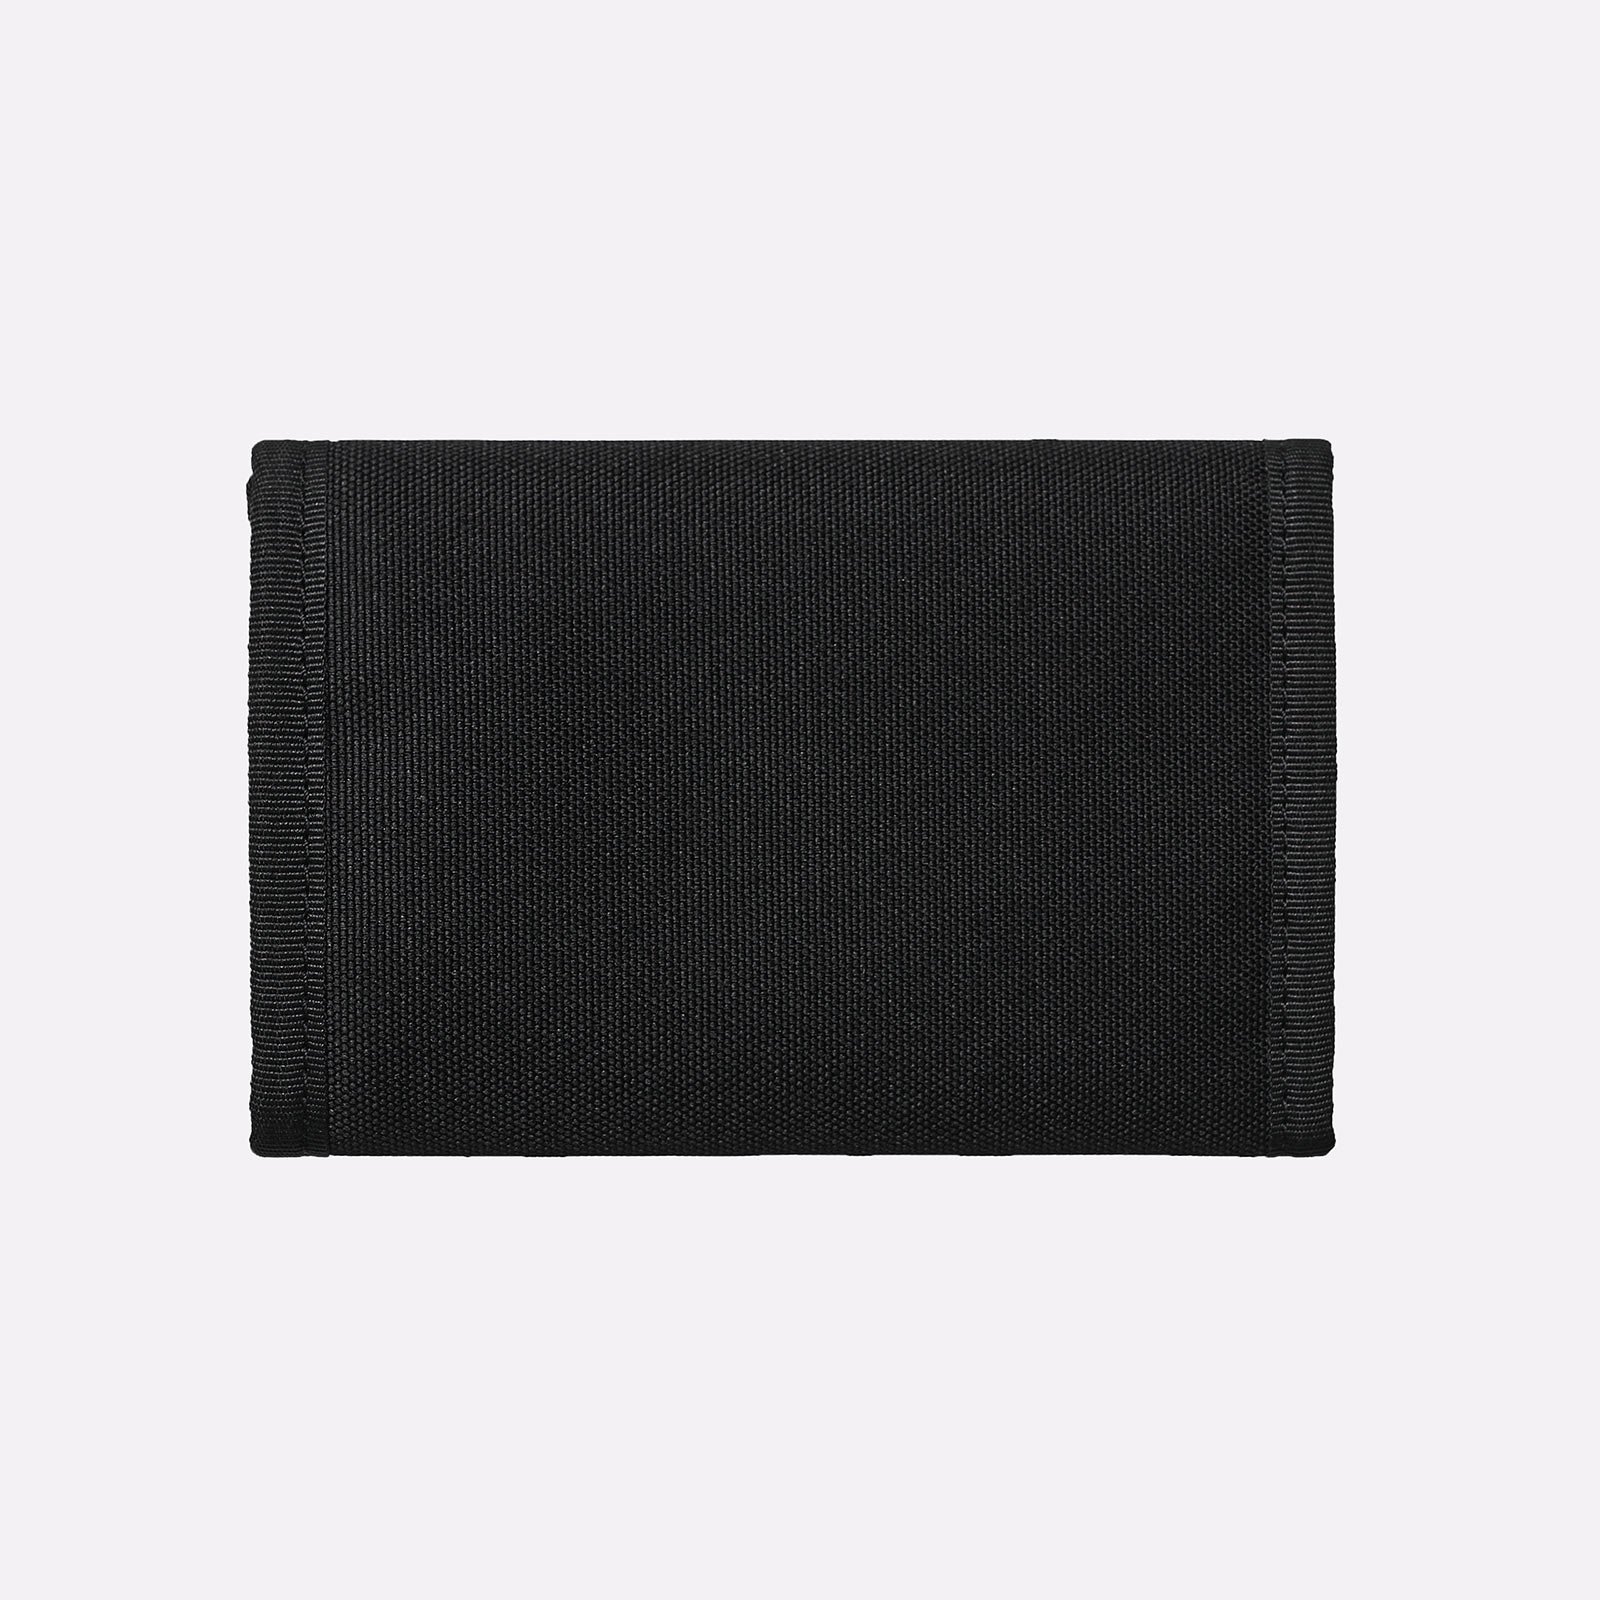 бумажник Carhartt WIP Alec Wallet  (I031471-black)  - цена, описание, фото 2